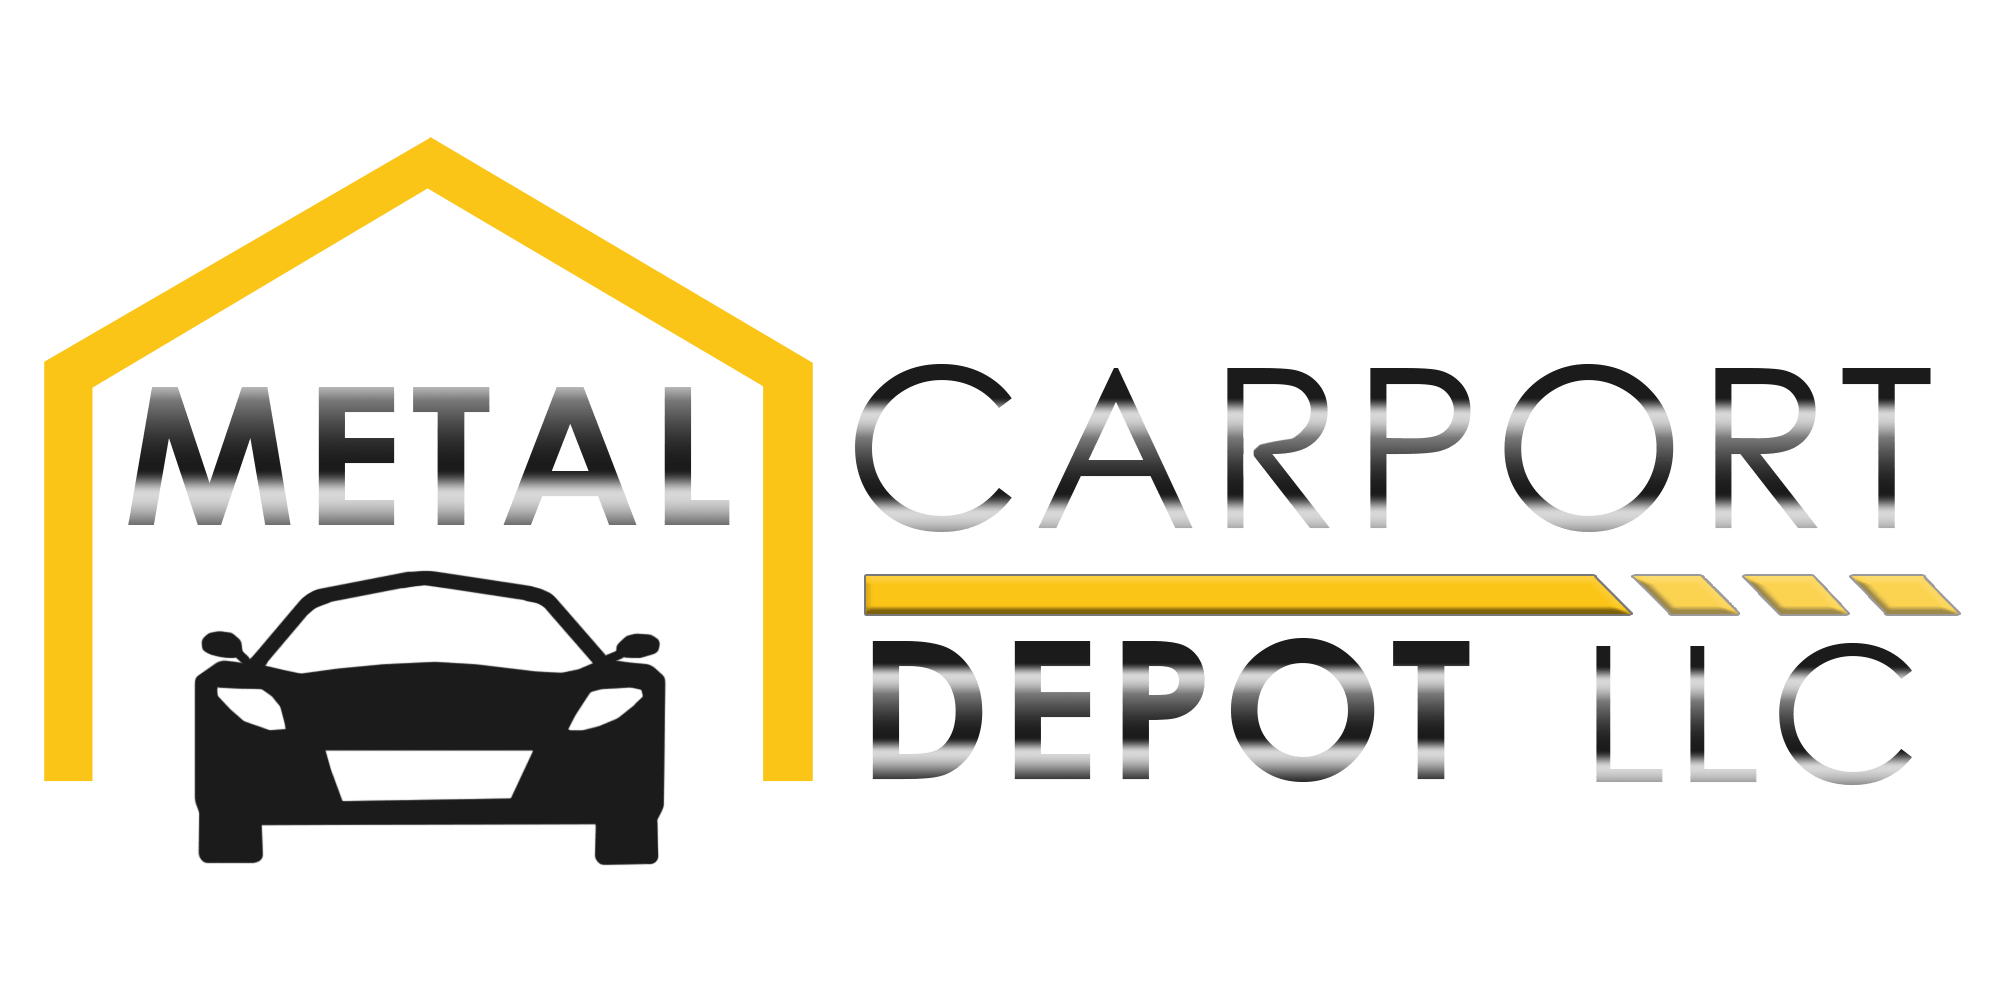 Metal Carport Depot LLC